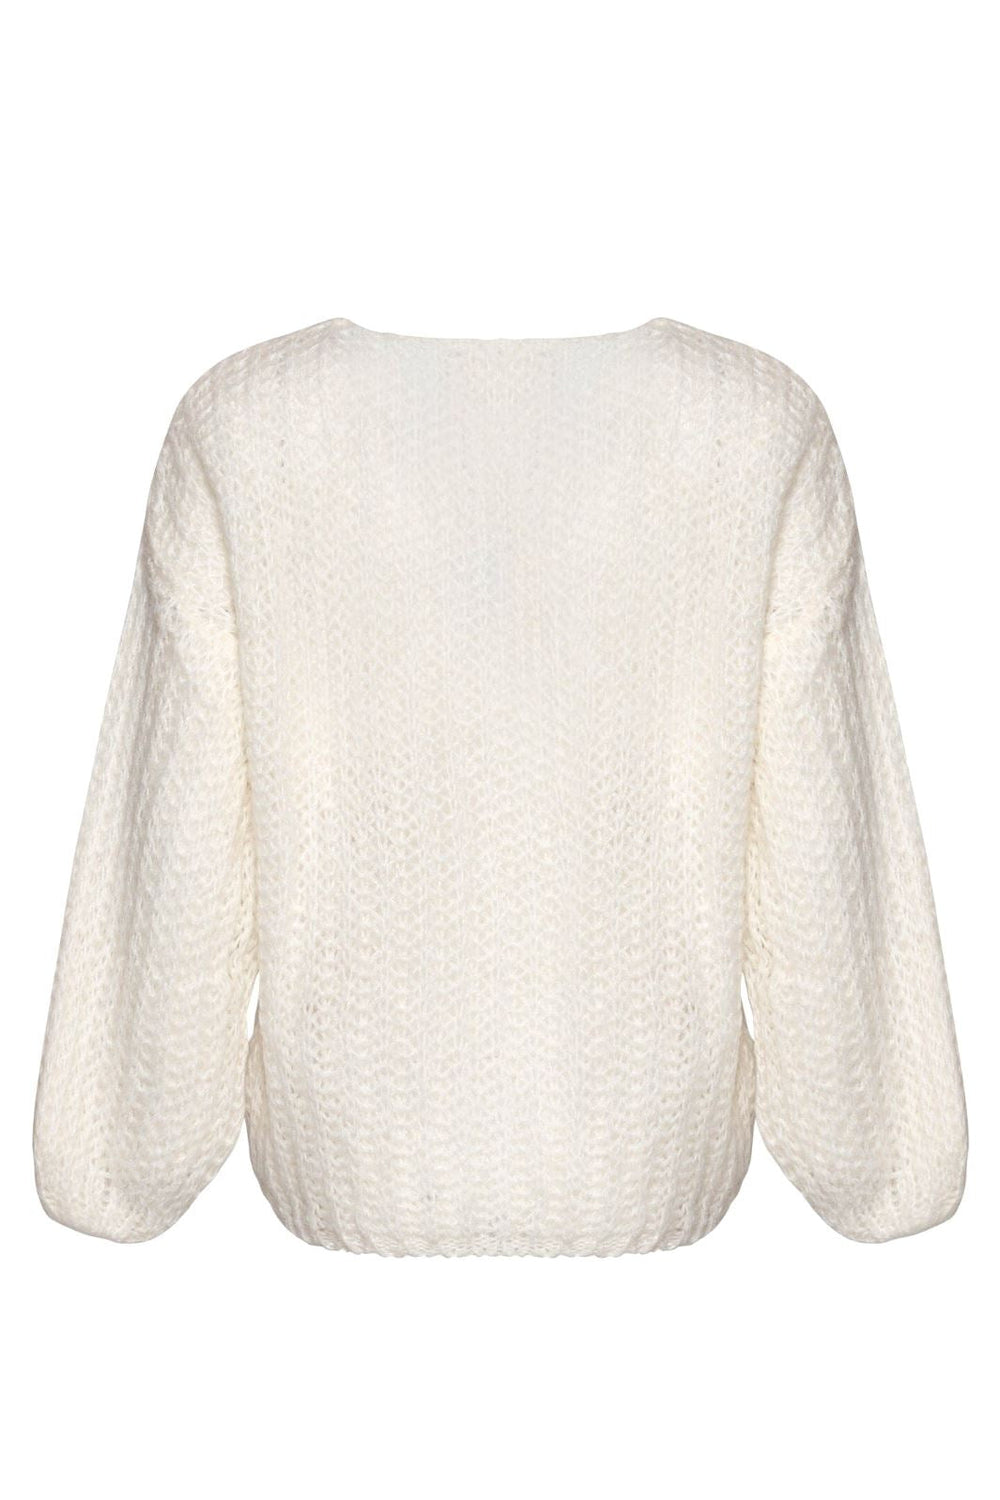 Noella - Joseph Knit Sweater - 028 White Strikbluser 